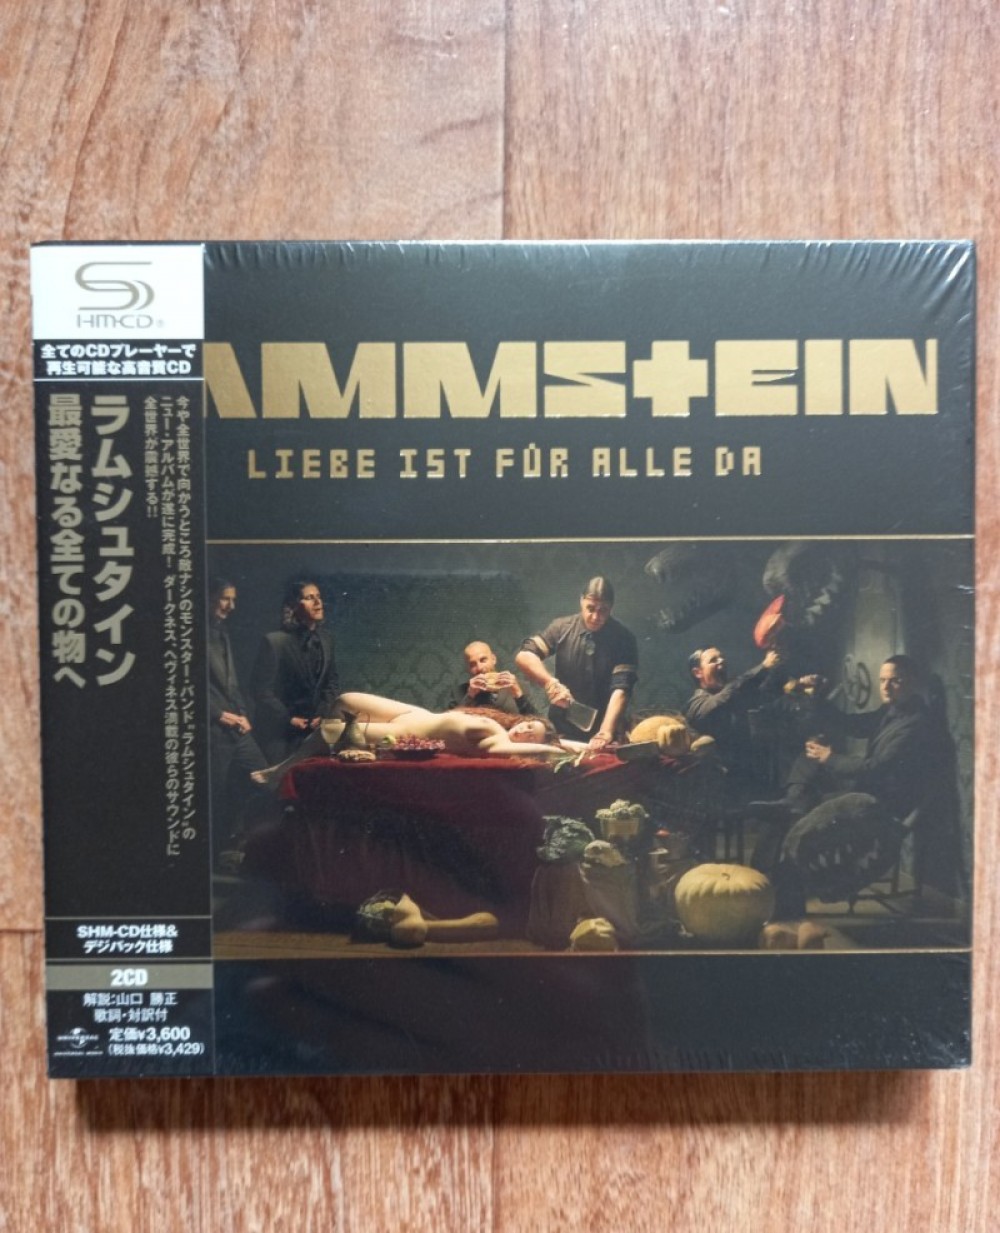 Rammstein - Liebe ist für alle da CD Photo